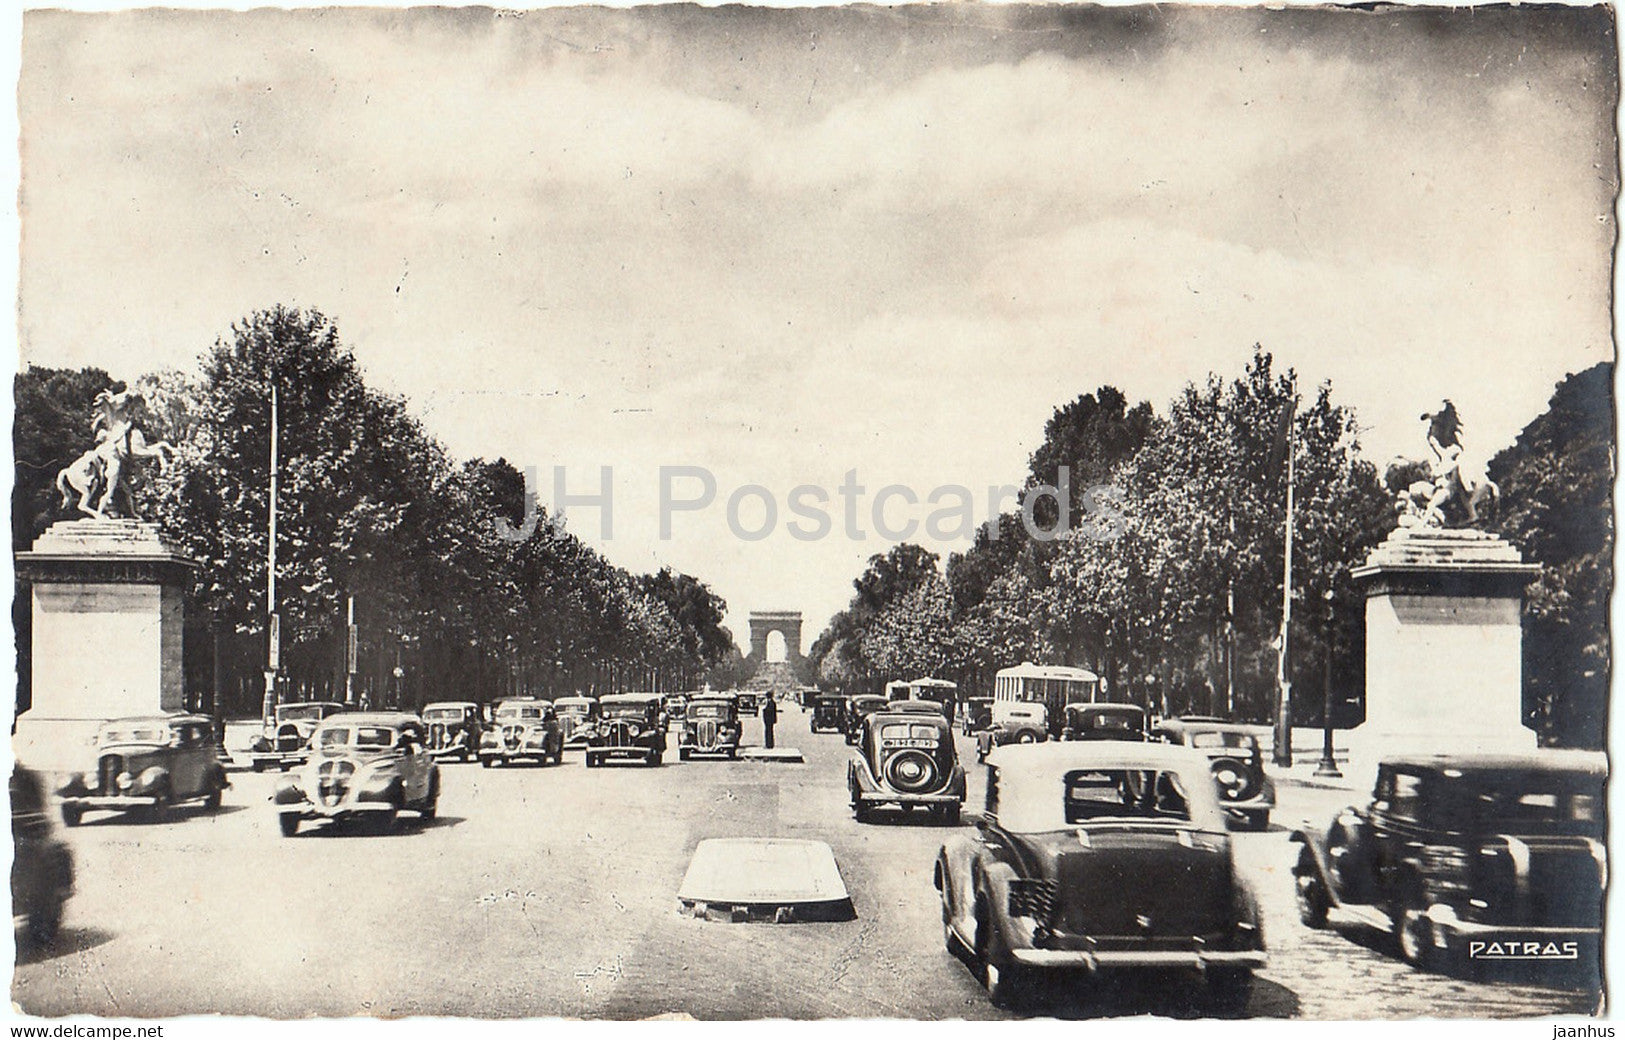 Paris - Les Champs Elysees - Les Jolis Coins de Paris - car - 80 - old postcard - 1946 - France - used - JH Postcards